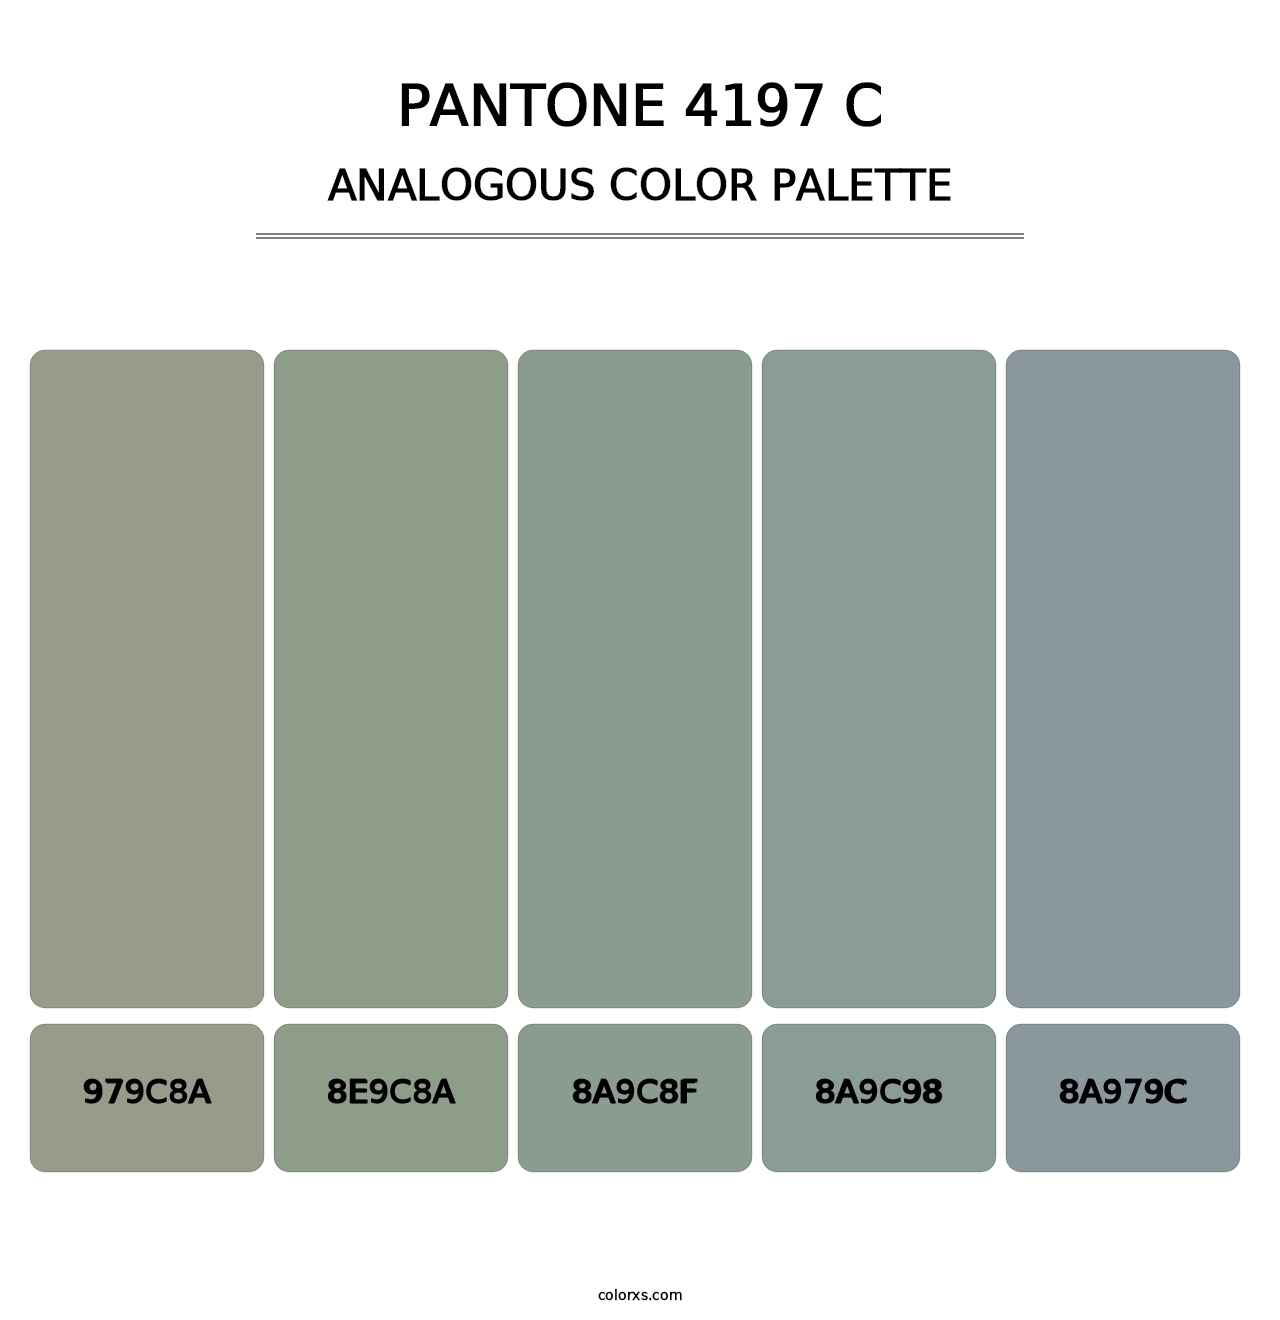 PANTONE 4197 C - Analogous Color Palette